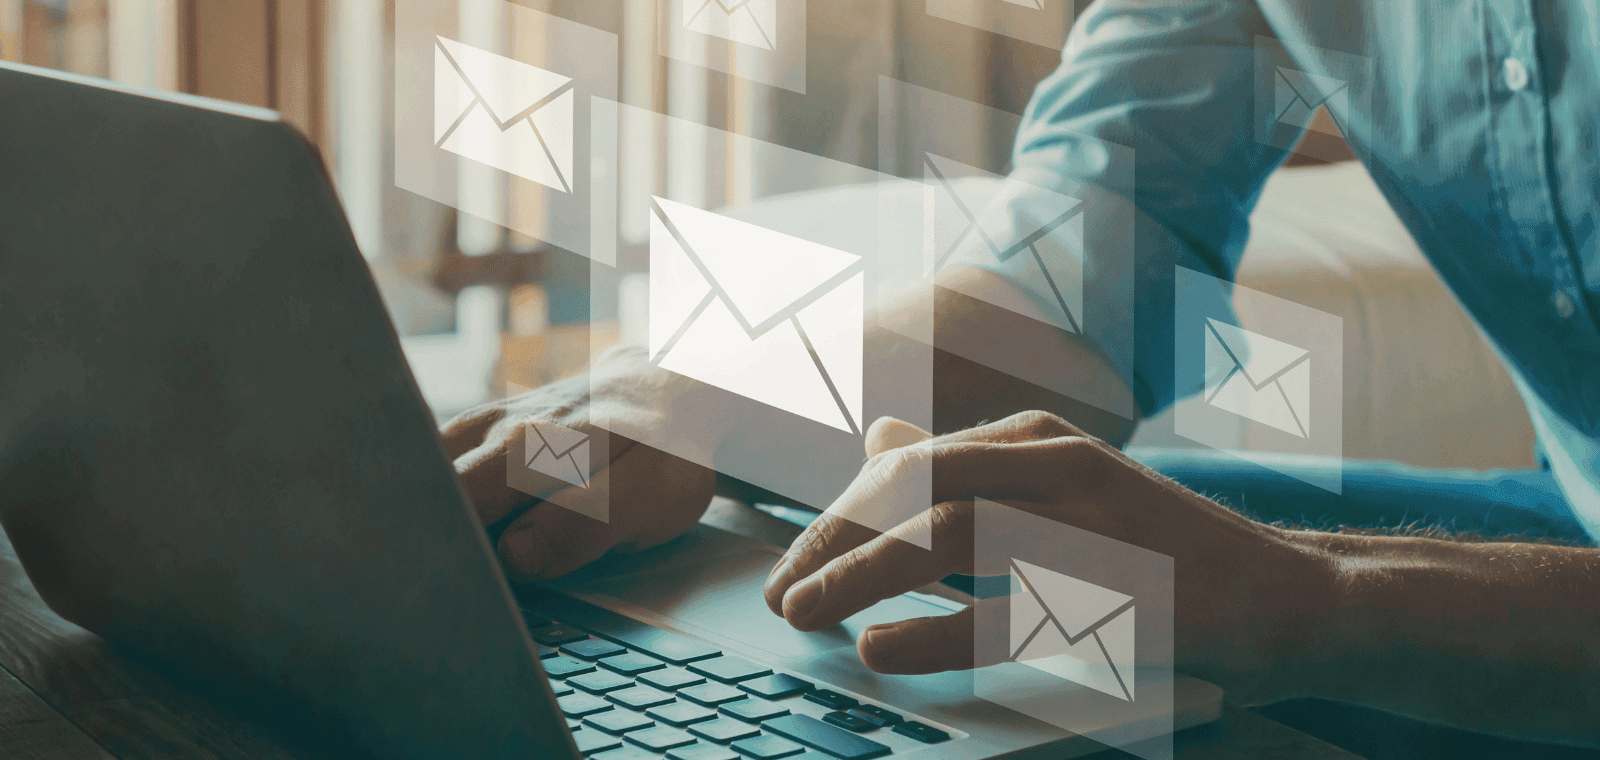 Délivrabilité email : adaptez votre stratégie d’envoi en fonction des périodes et secteurs d’activité à risque